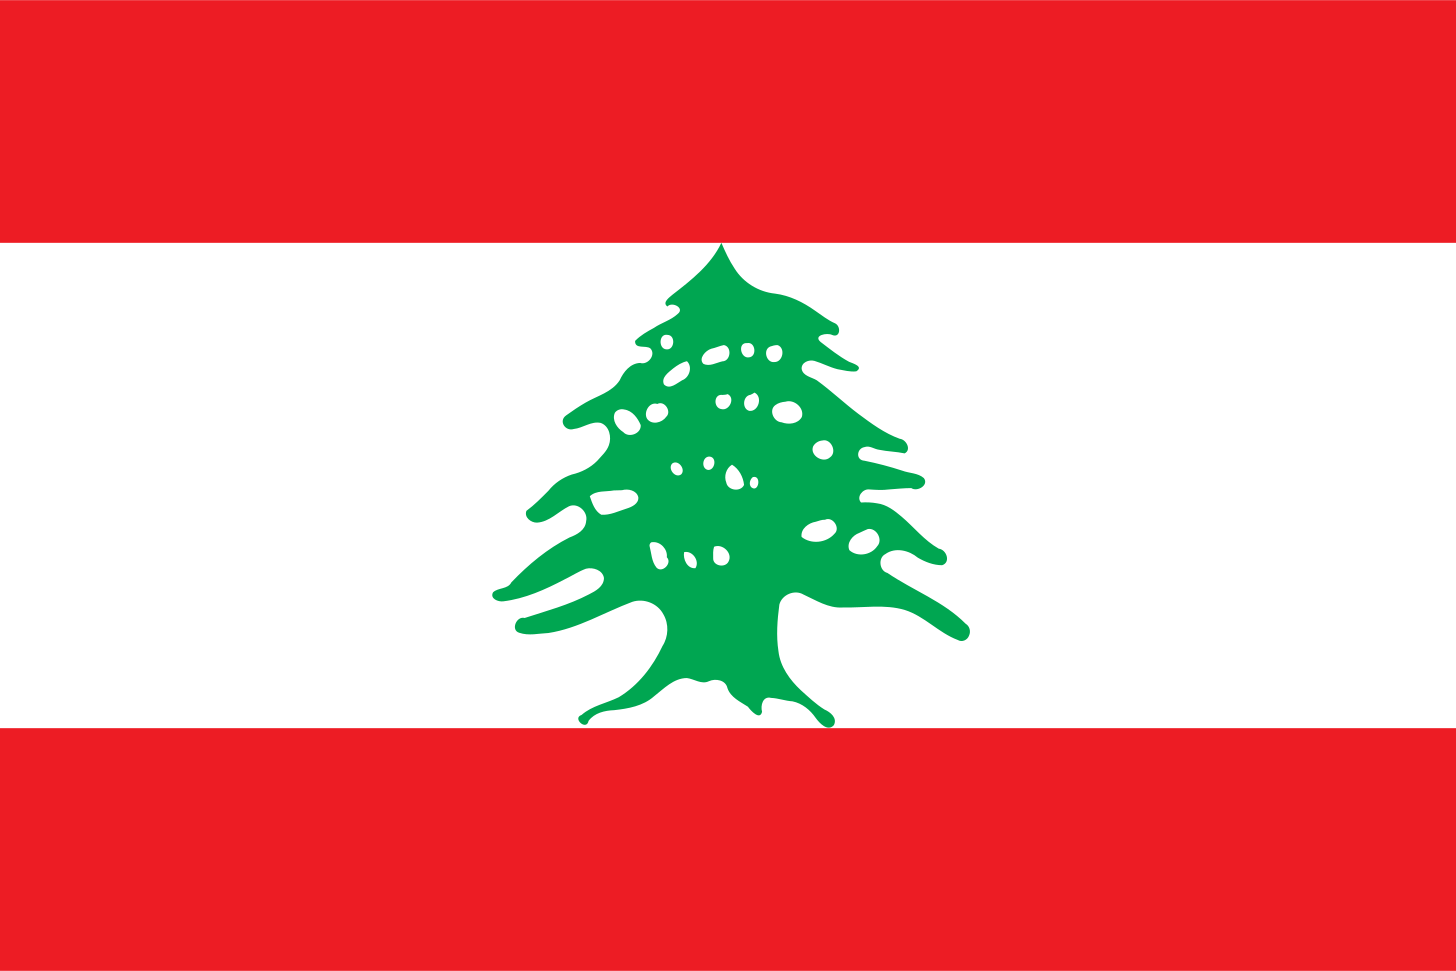 https://upload.wikimedia.org/wikipedia/commons/5/59/Flag_of_Lebanon.svg